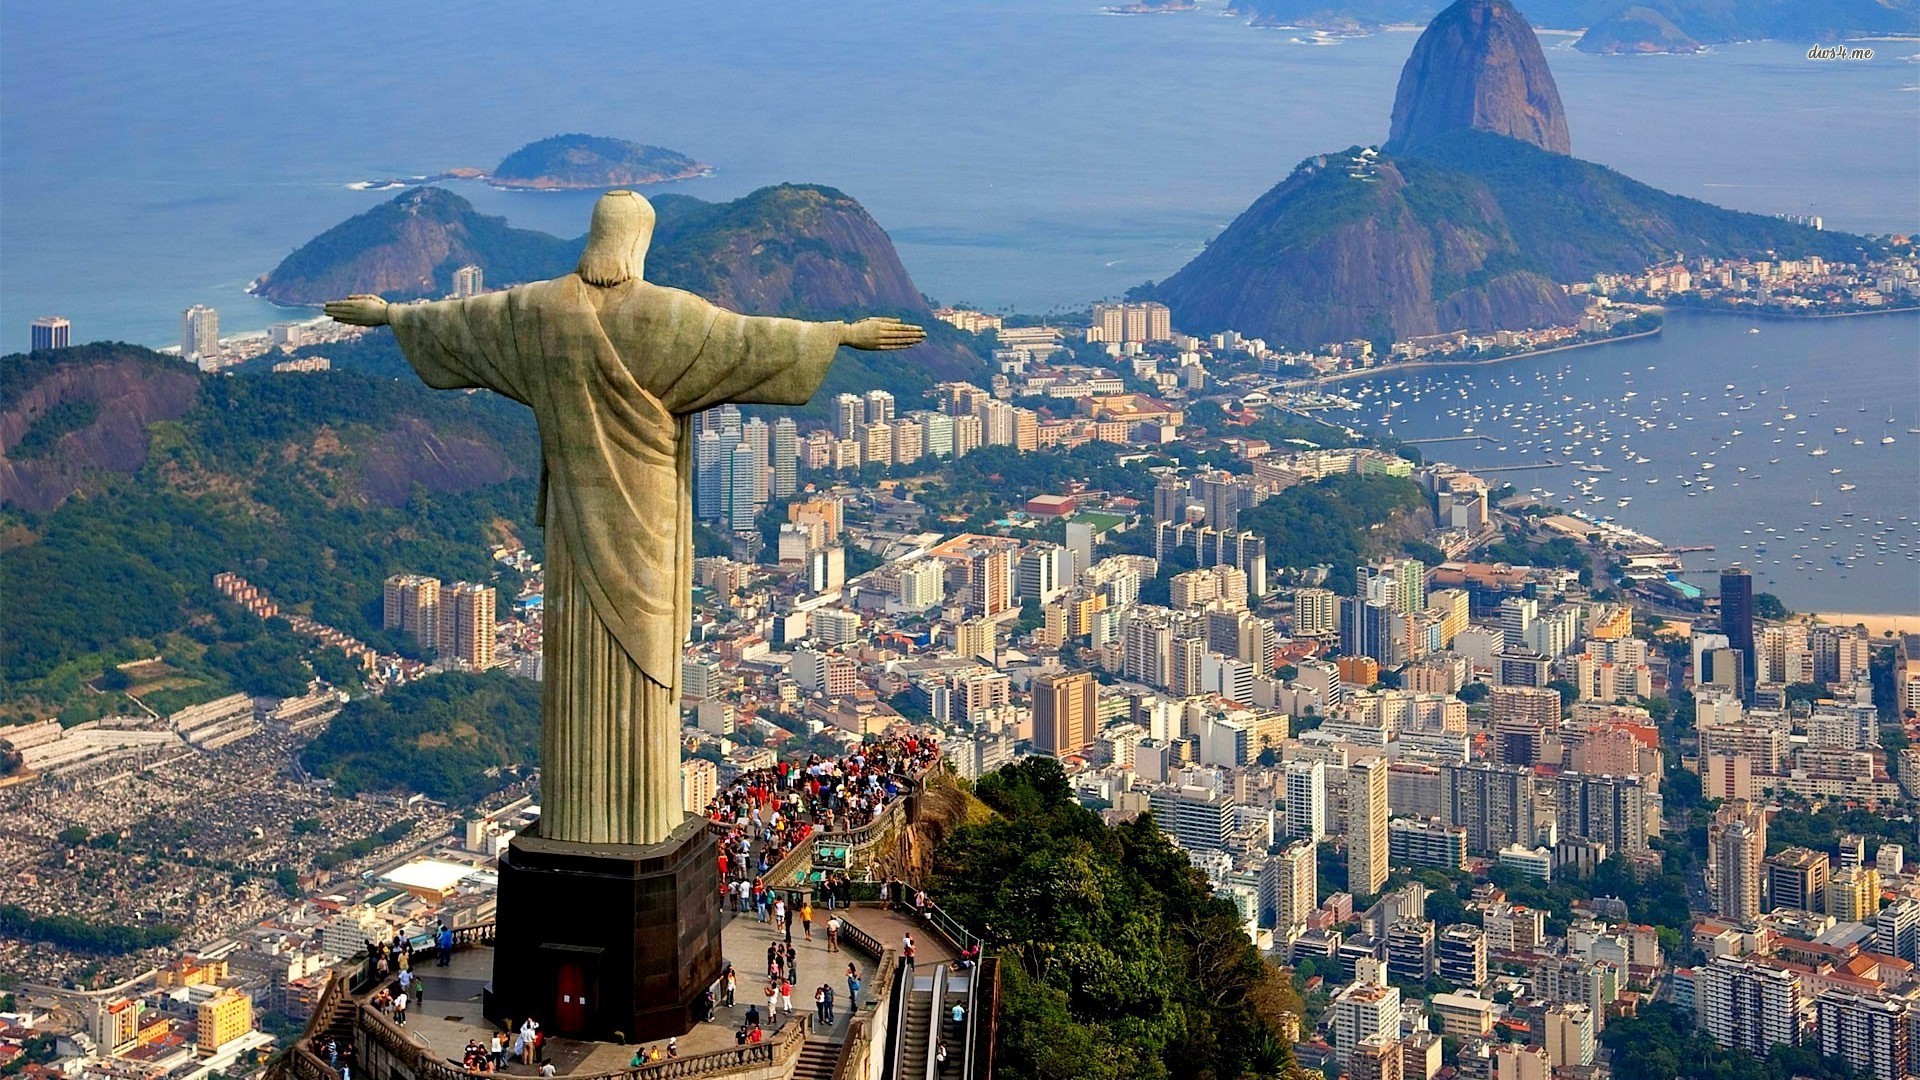 Welcome to Rio de Janeiro - Short history